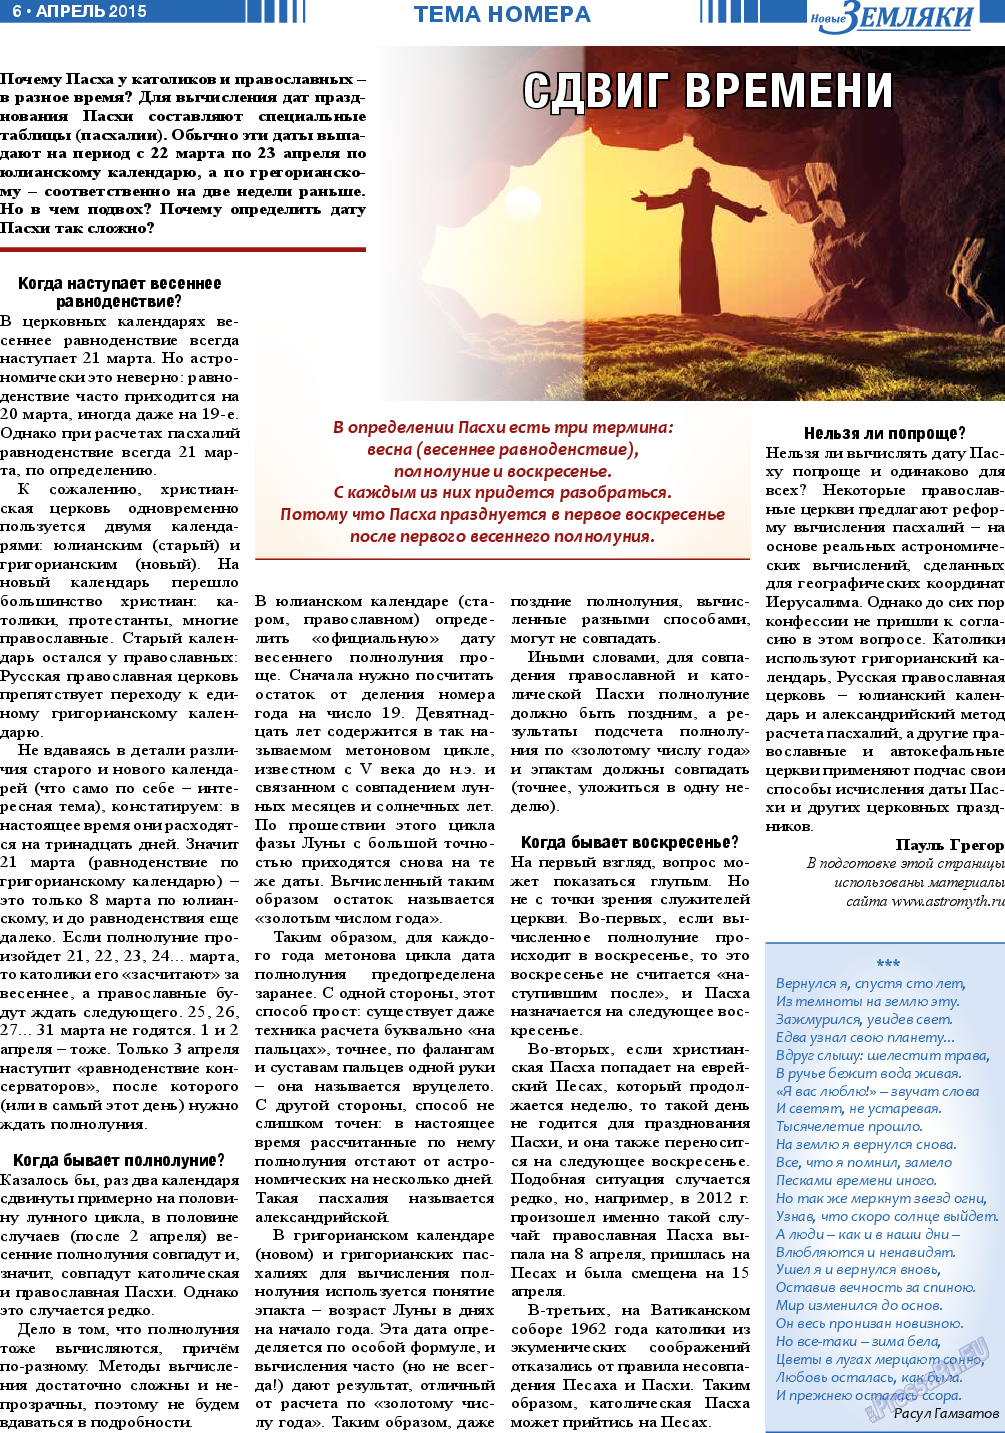 Новые Земляки (газета). 2015 год, номер 4, стр. 6